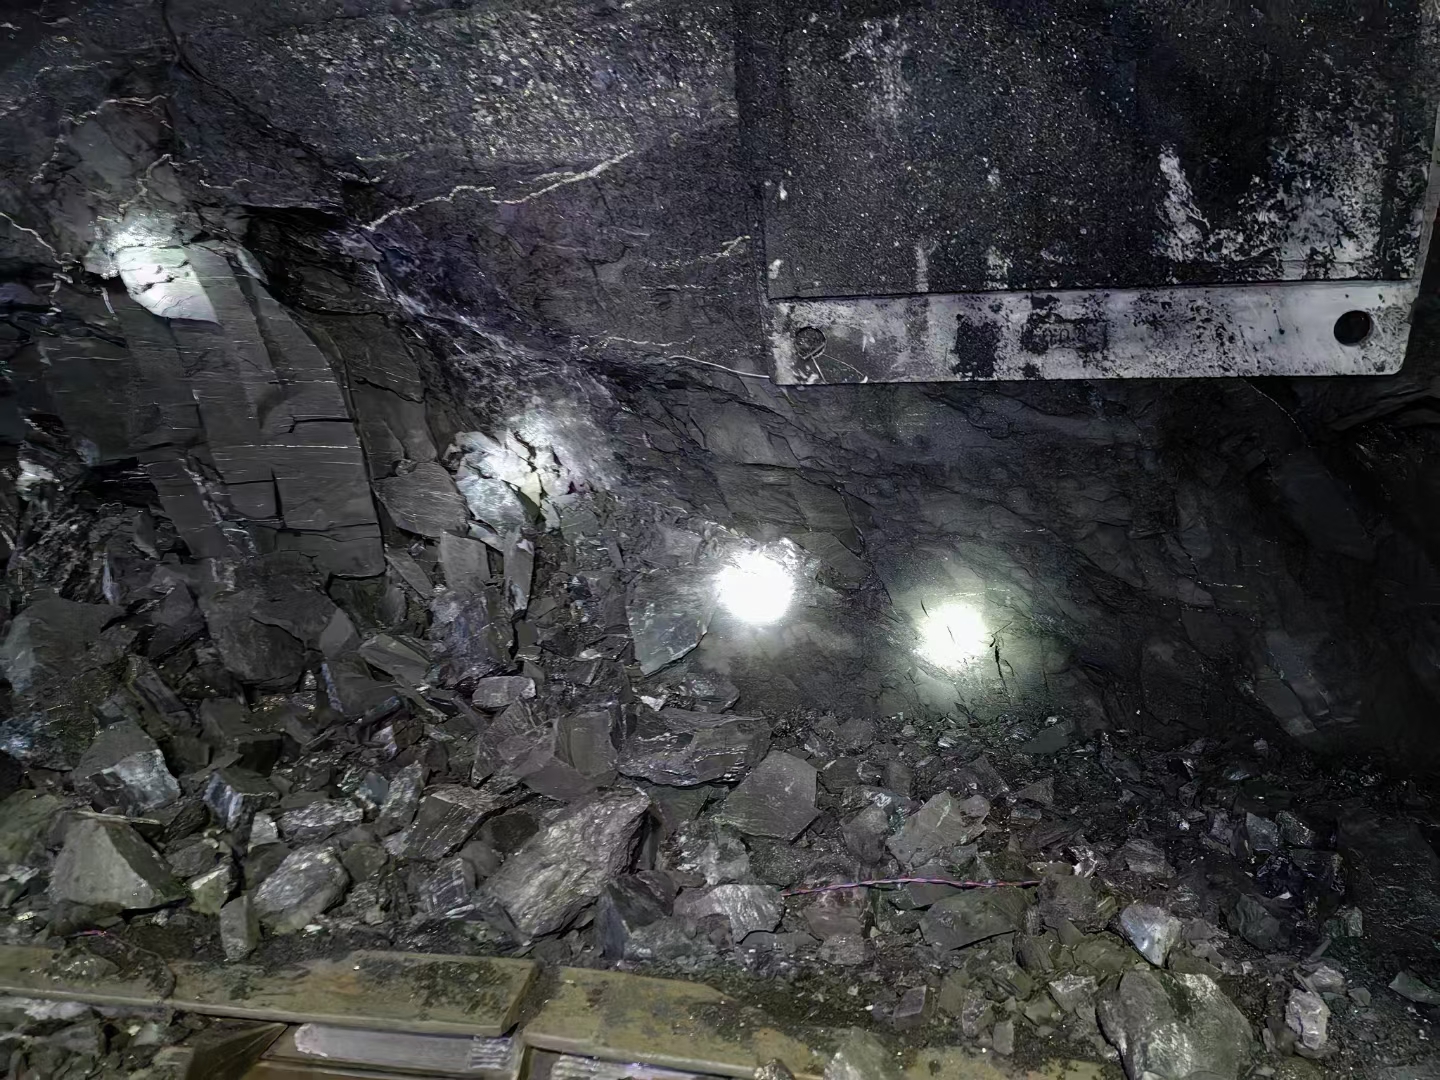 克孜勒苏洞采隧道新工艺设备公司